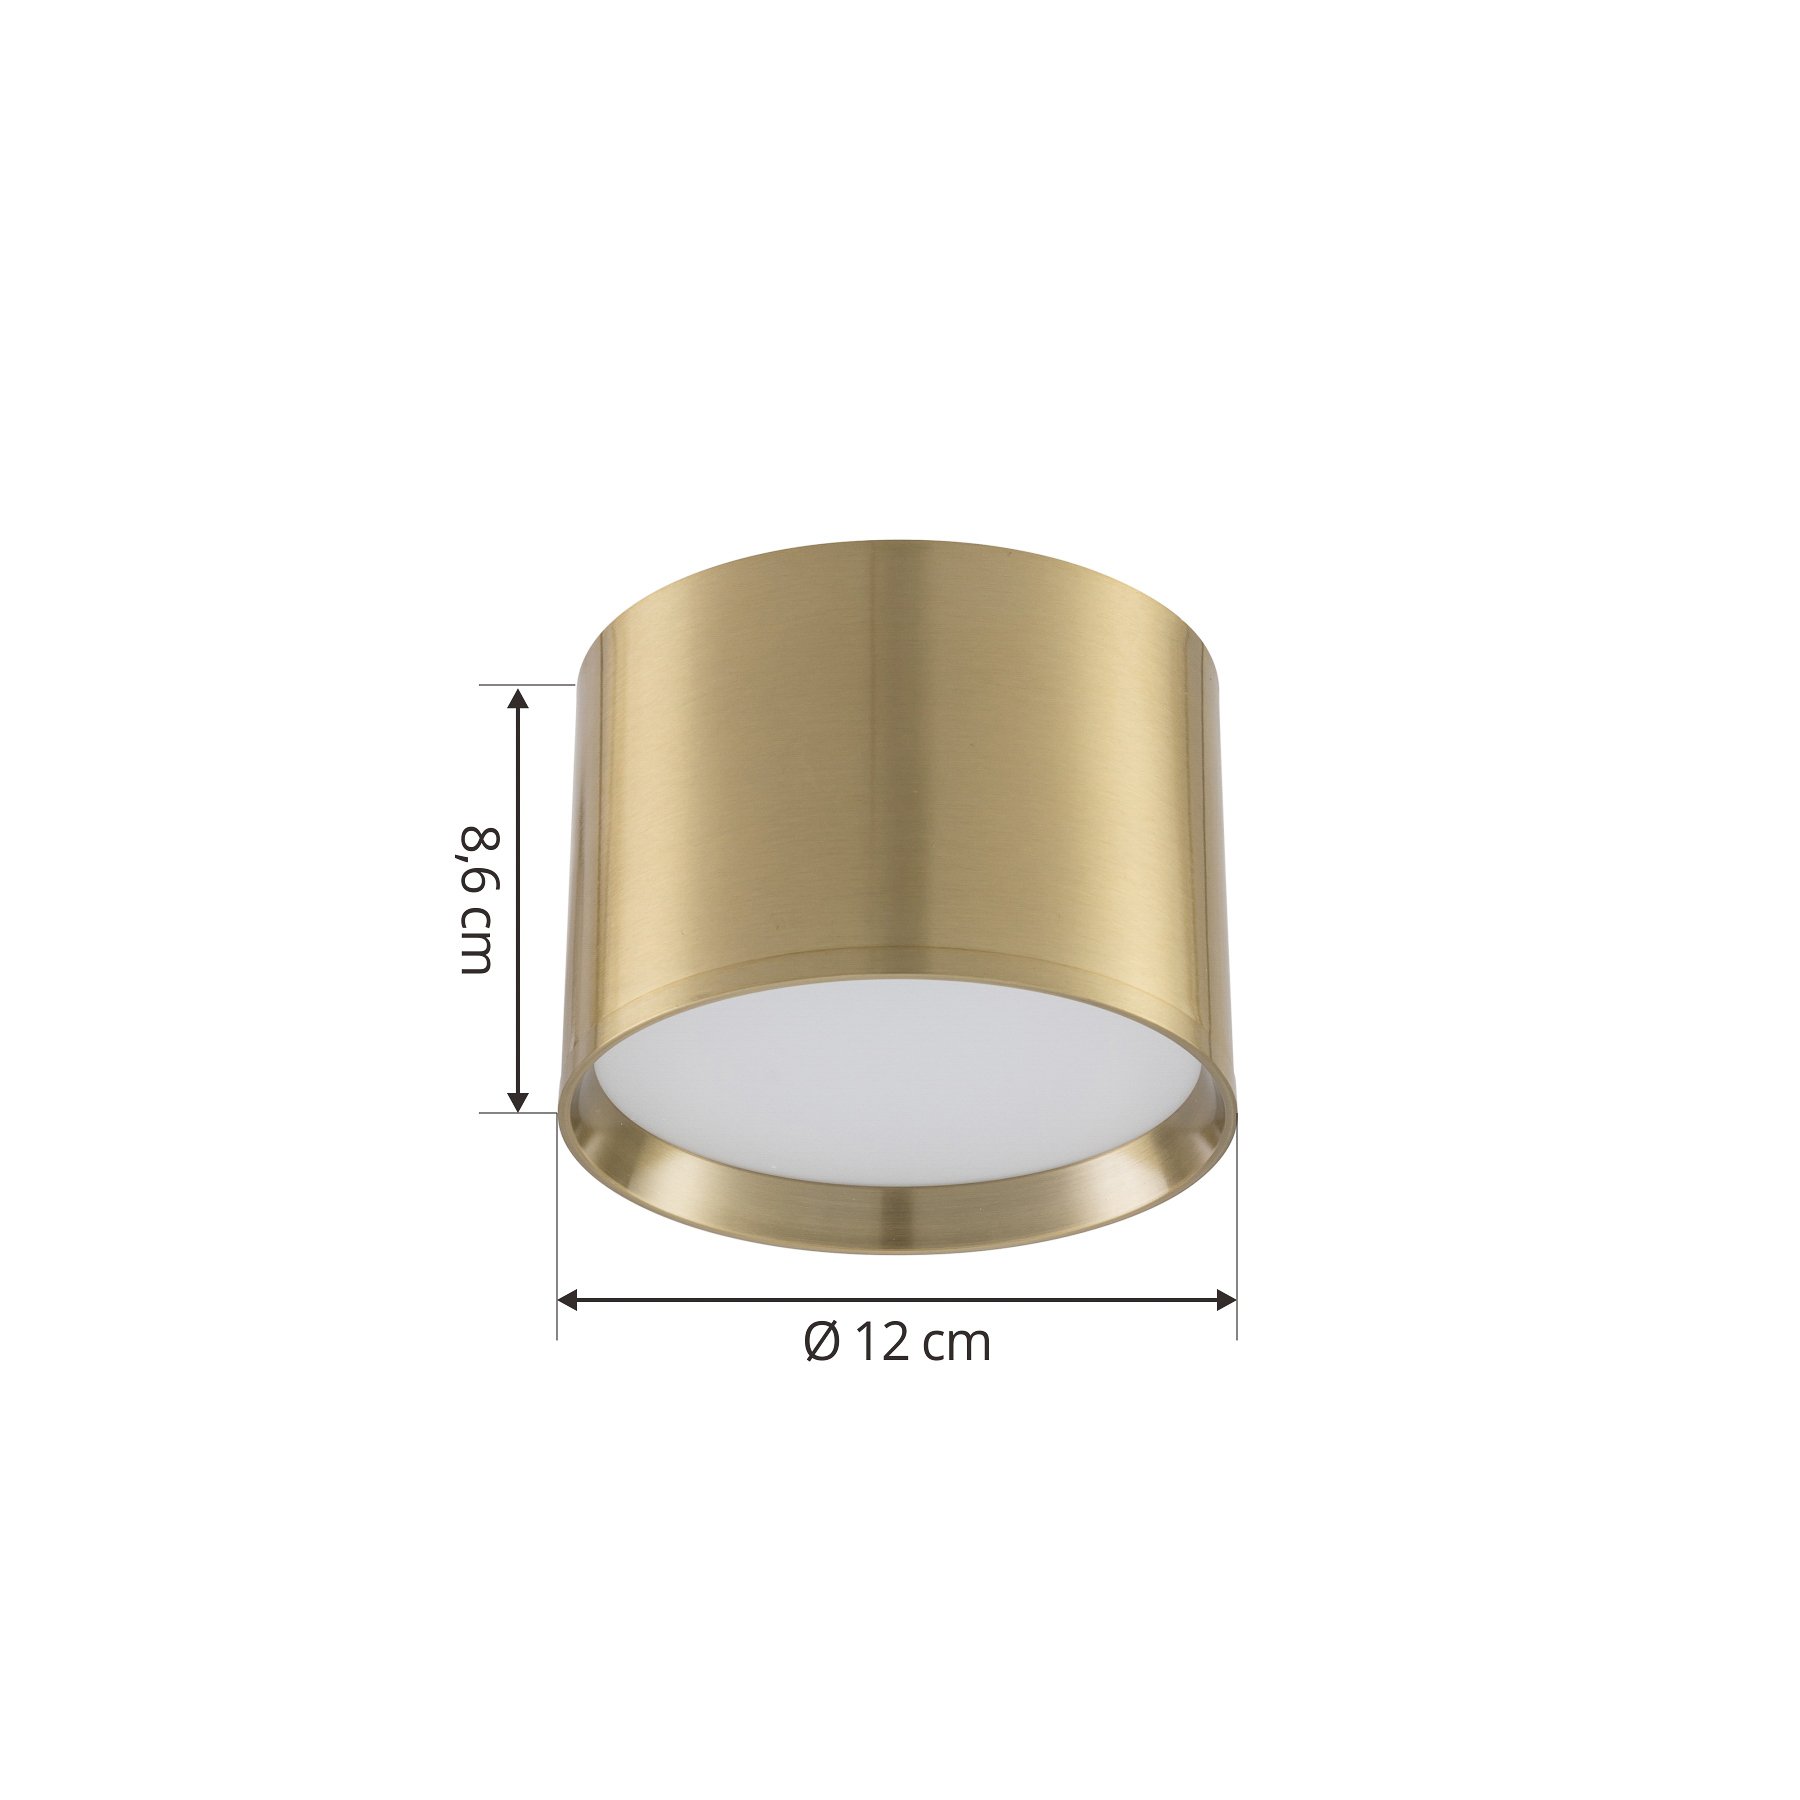 Lindby Nivoria LED-es spotlámpa, Ø 12 cm, arany színű, 4 darabos szett